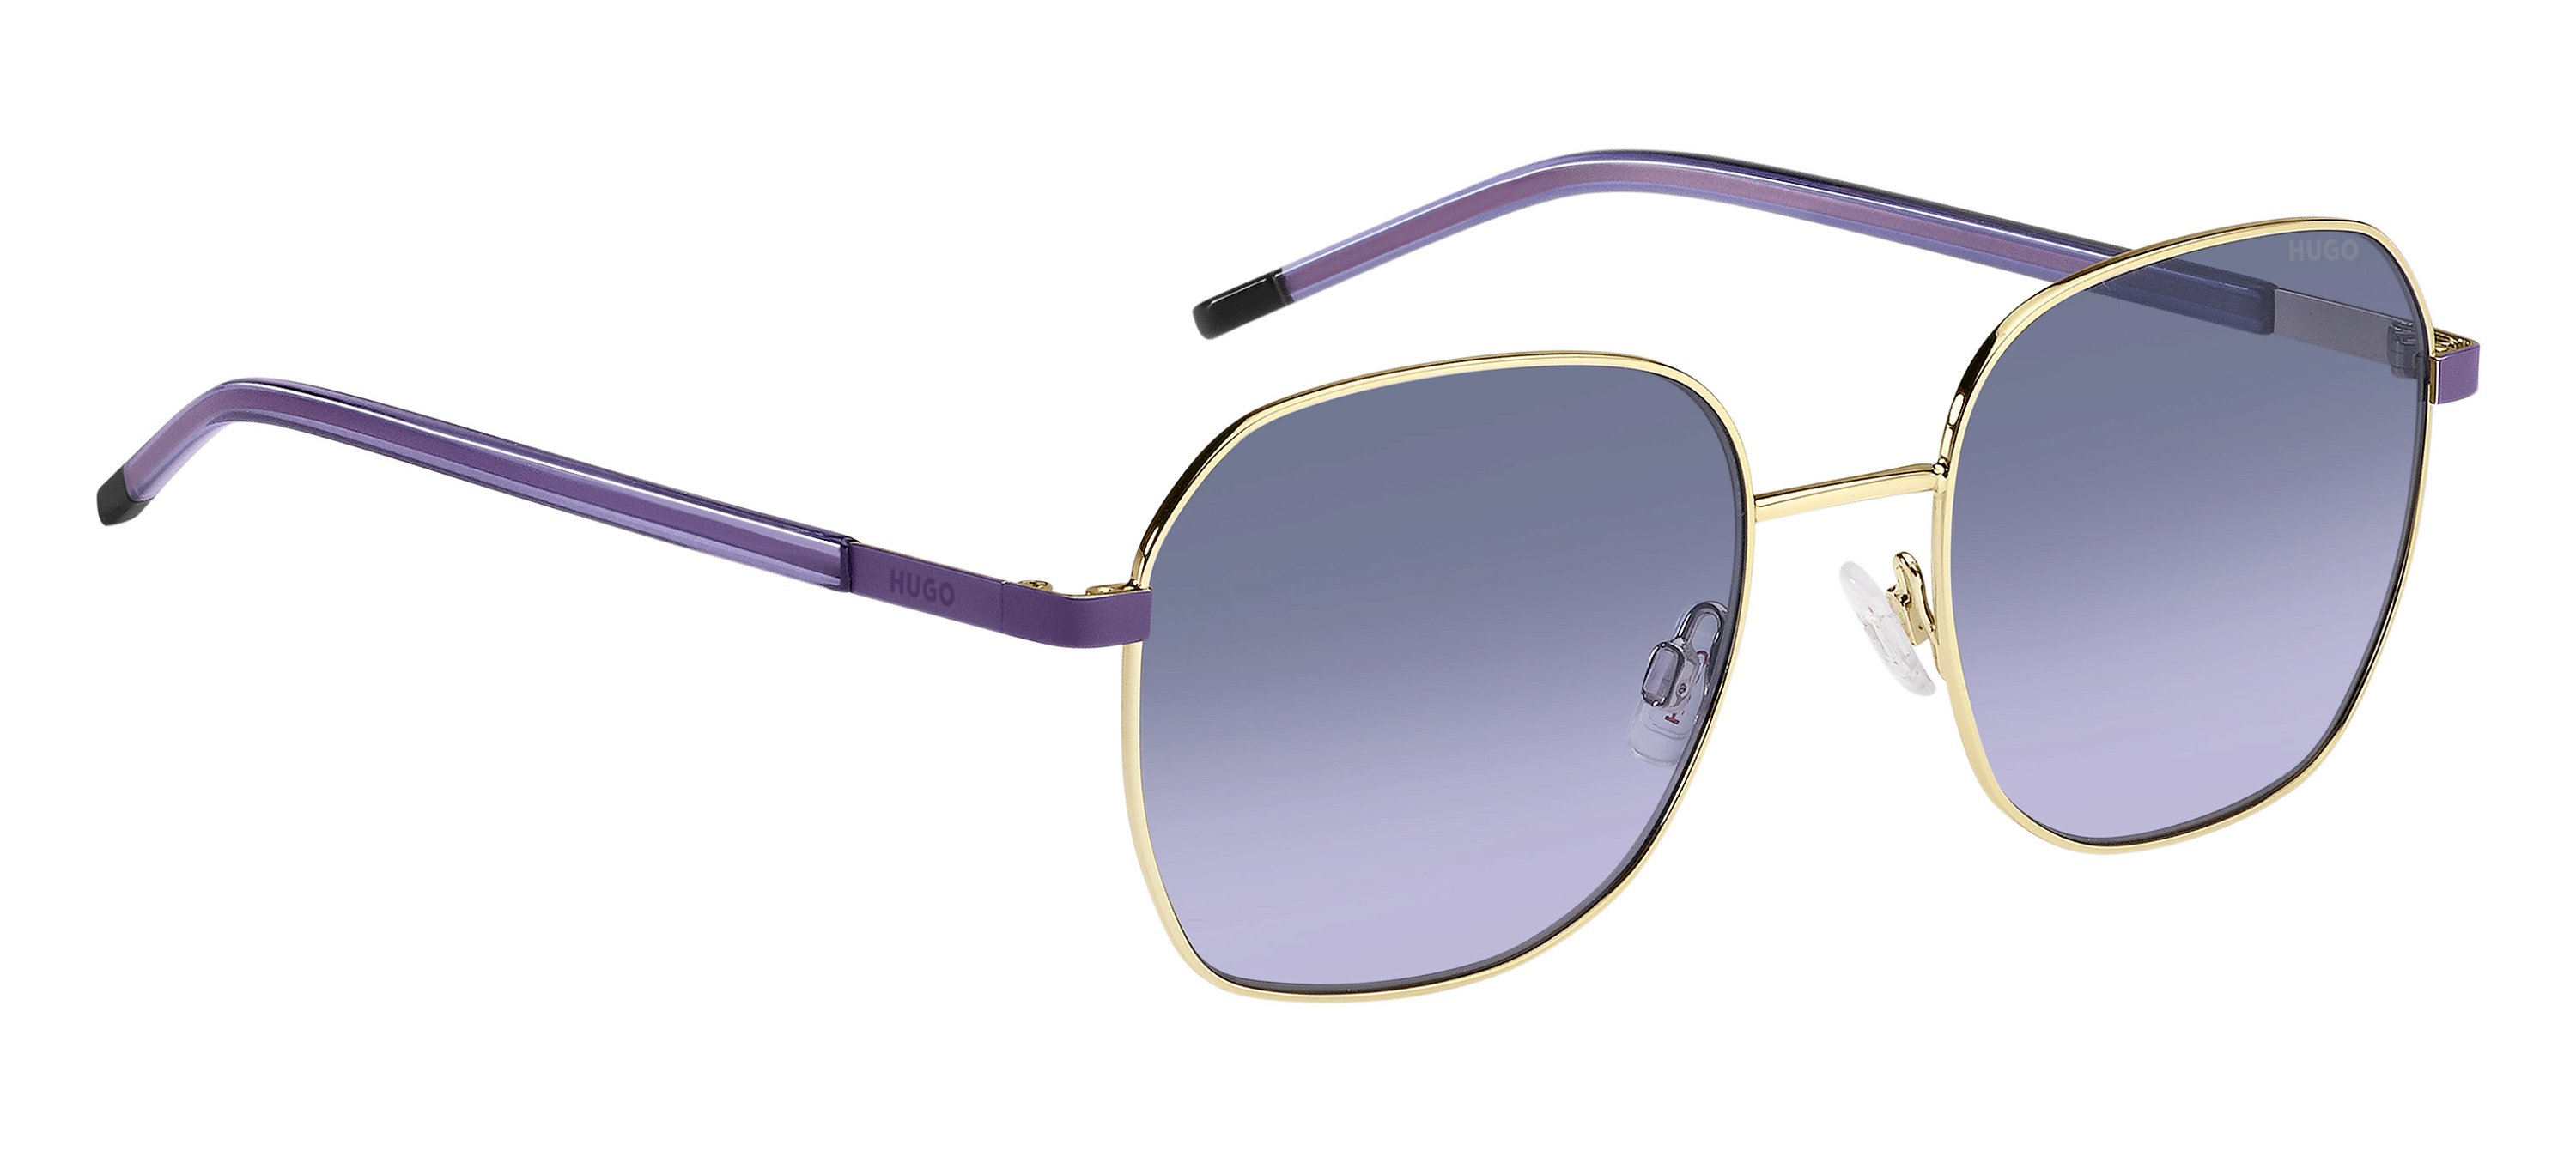 Das Bild zeigt die Sonnenbrille HG1276/S S9E von der Marke Hugo in gold/violet.